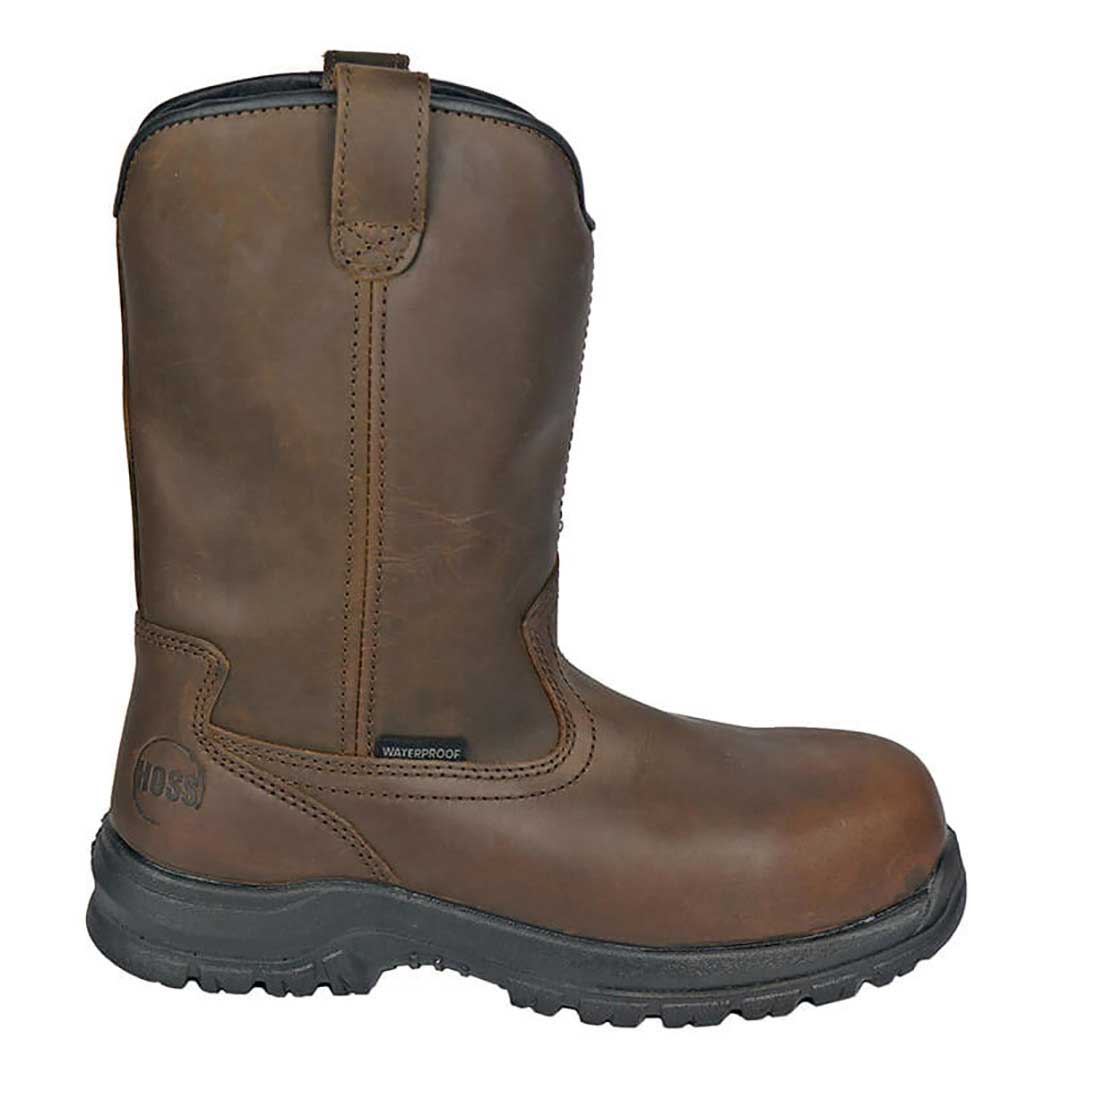 Hoss Boots Men's Tracker Brown 50251 4 inch Waterproof Composite Toe ...